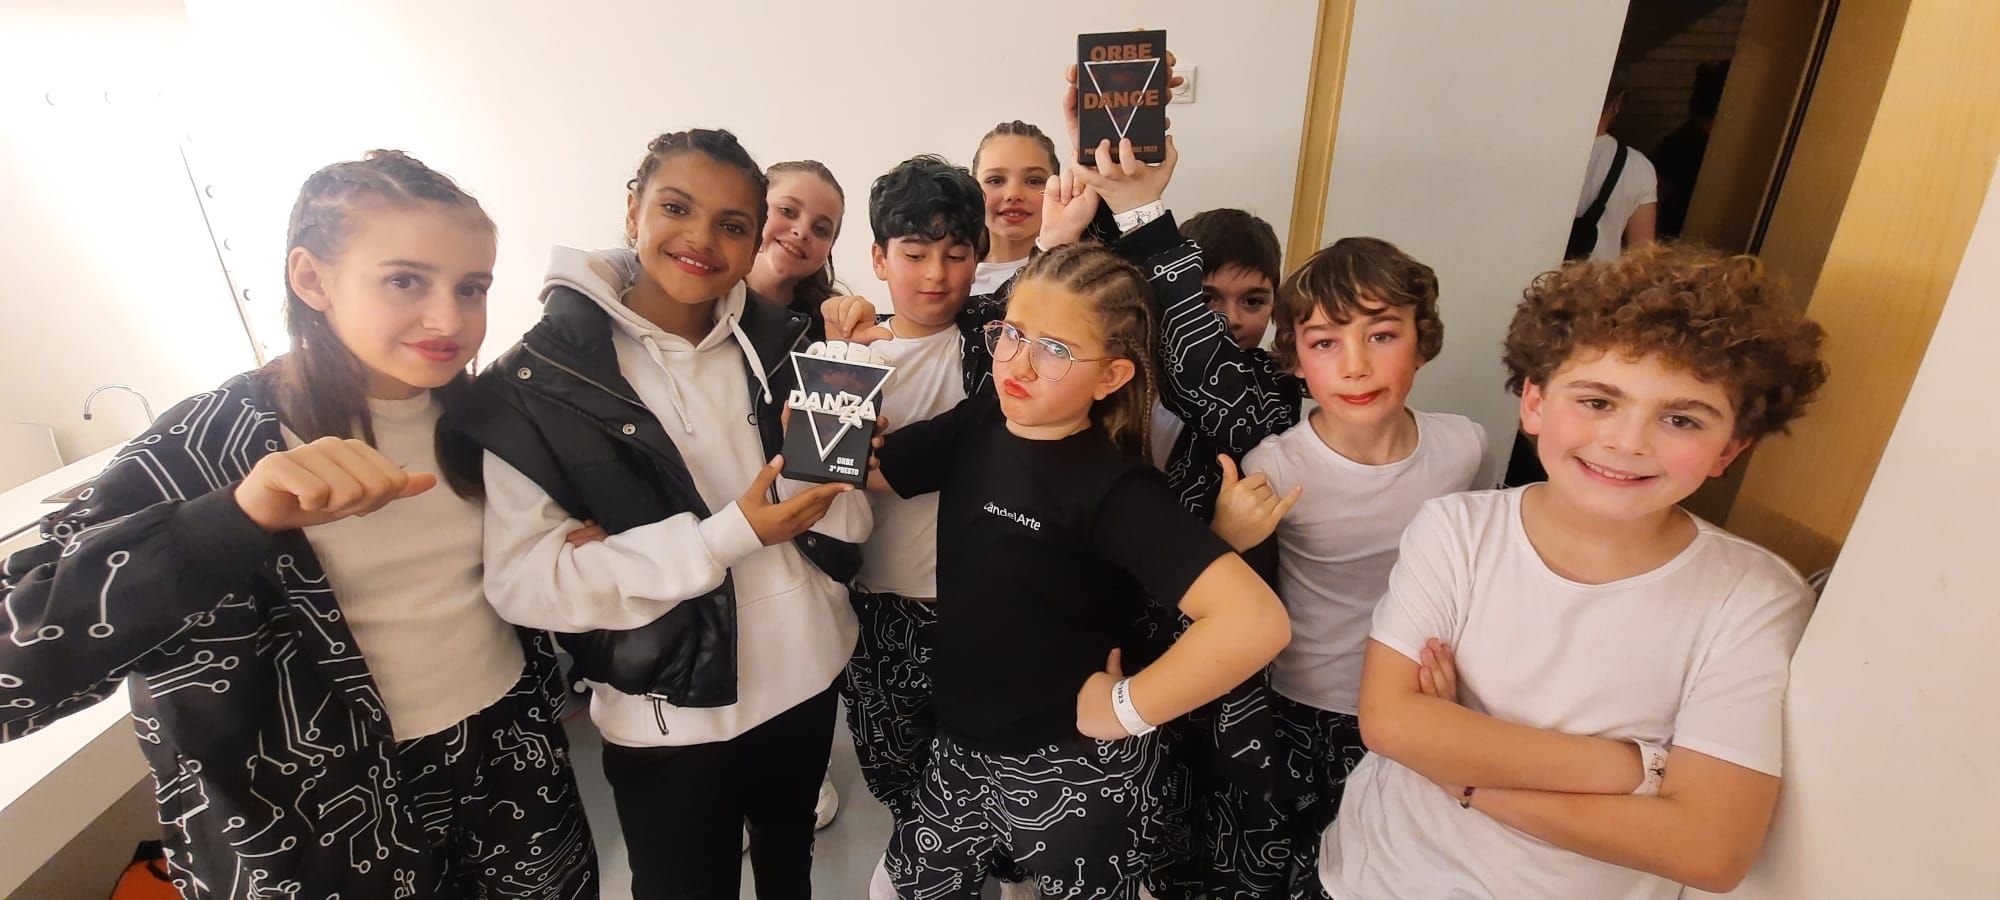 Éxito de la academia "Candelarte" de Lugones en el campeonato de baile celebrado en Burgos